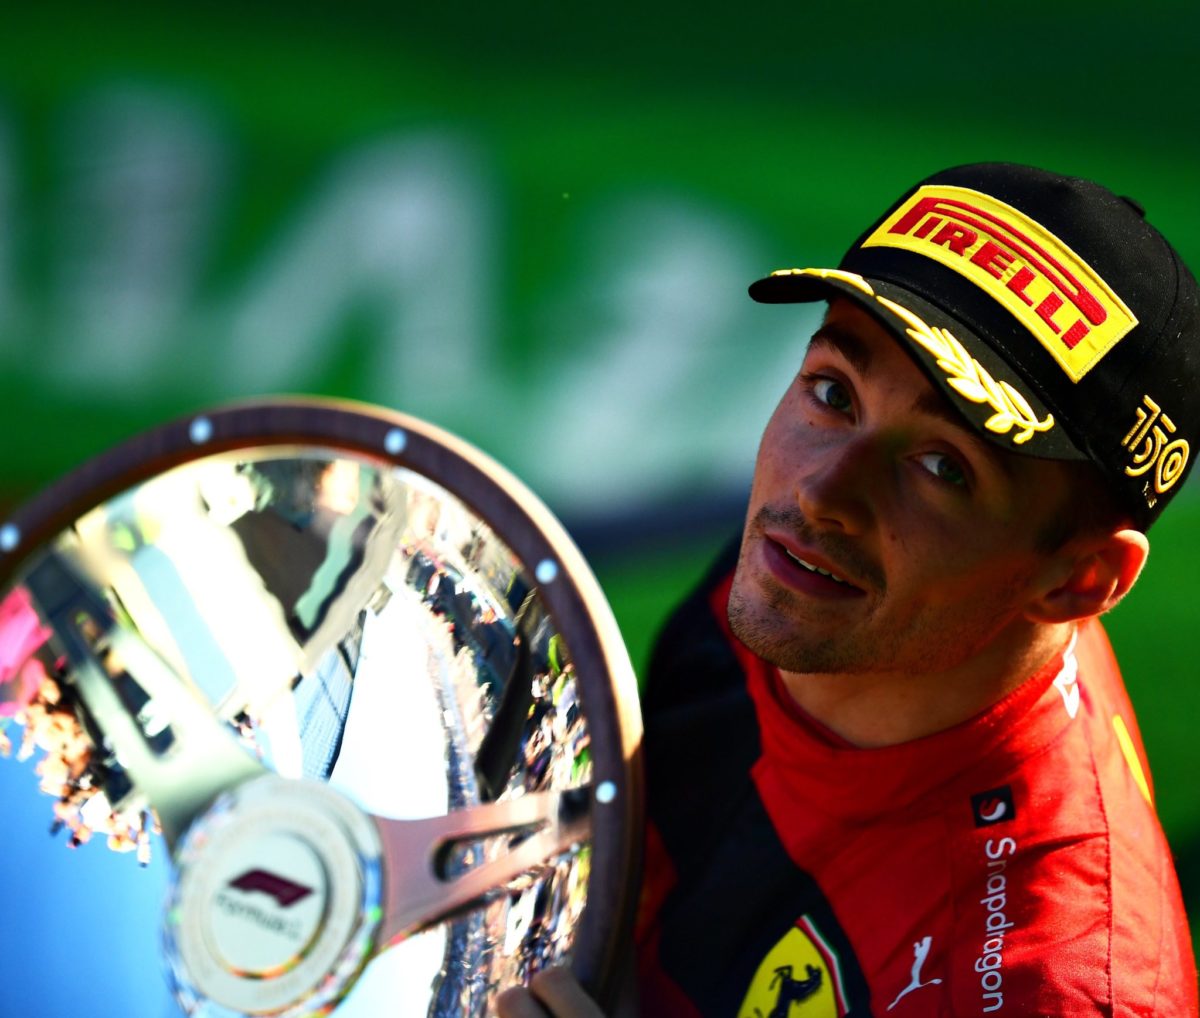 Análise do GP da Austrália: Charles Leclerc faz seu primeiro ‘Grand Chelem’; Max Verstappen, atual campeão, não finaliza a corrida